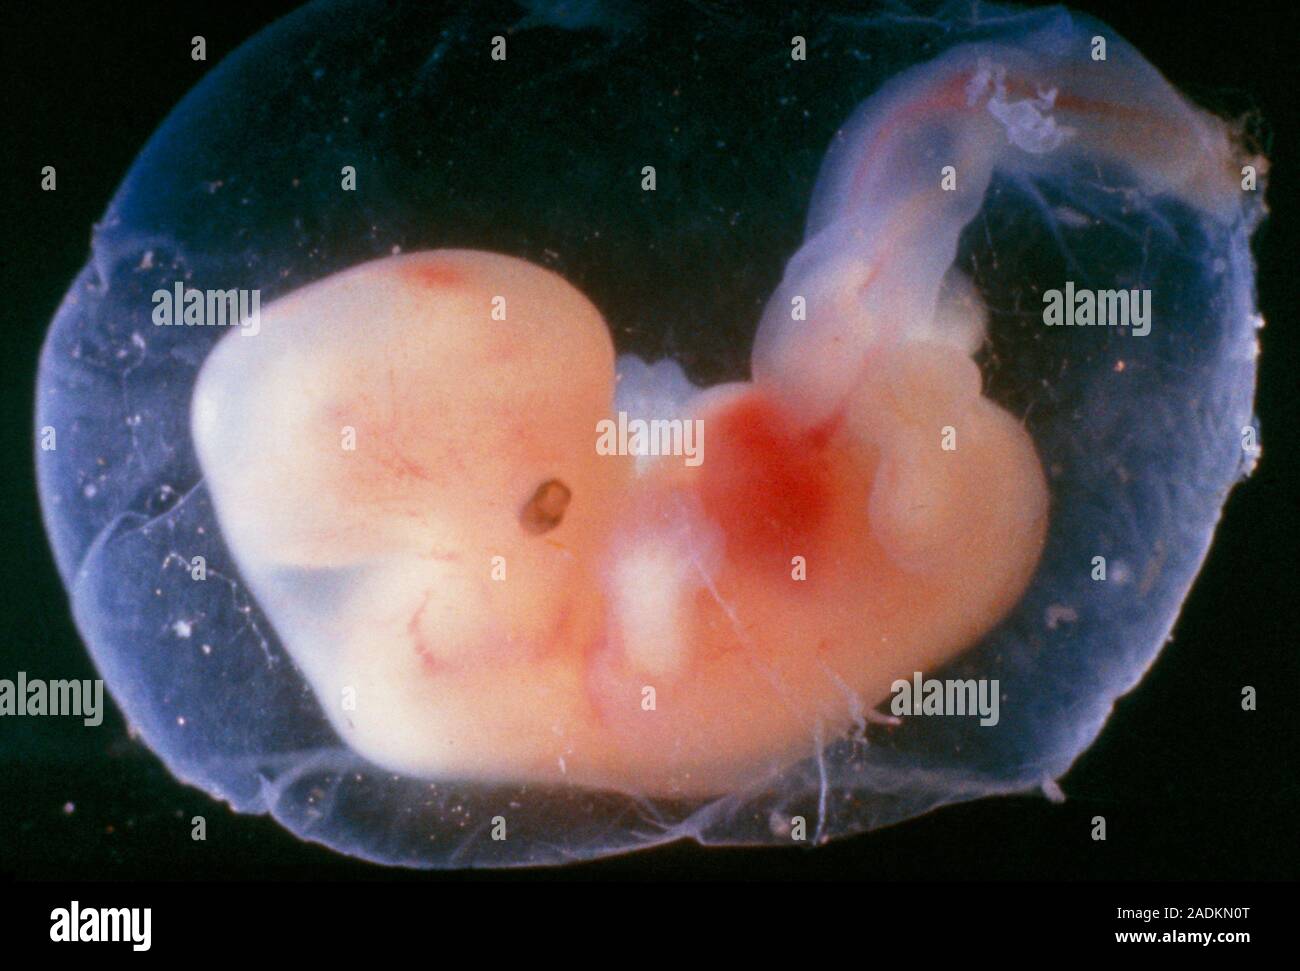 Плод 1 2 недели. Зародыг человека на 5 недели беременности. Эмбрион человека 5 недель.